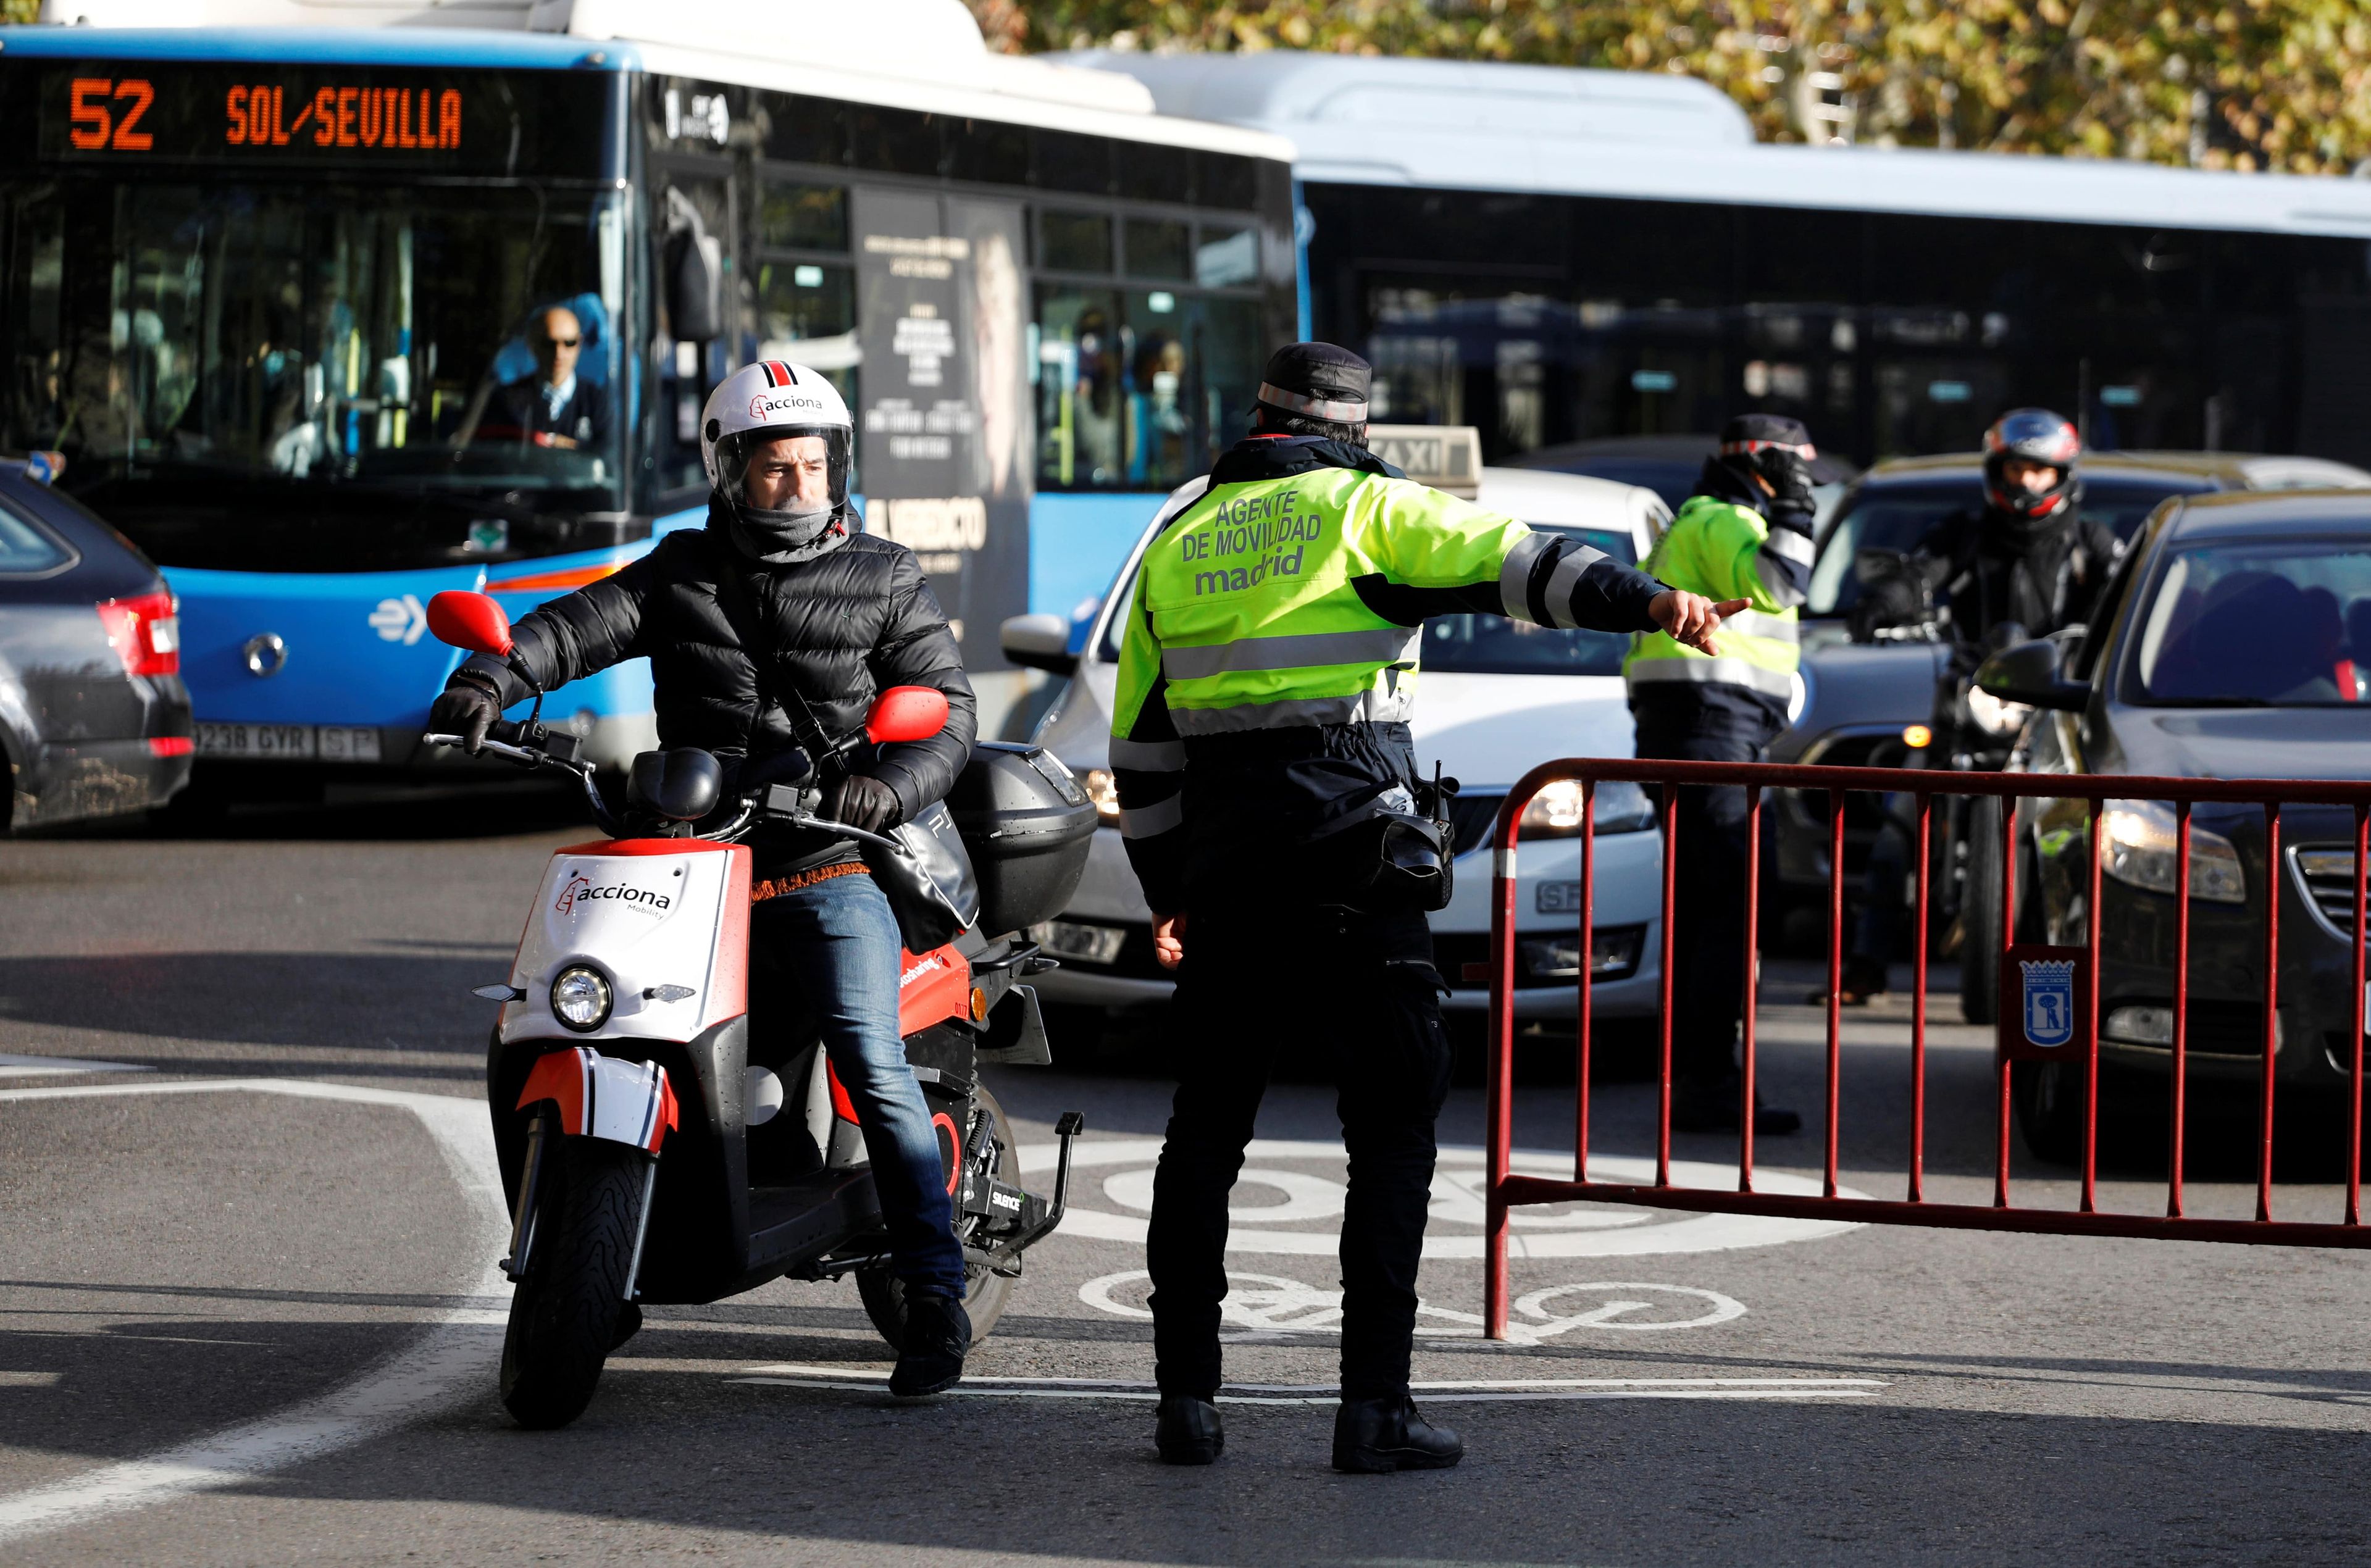 Agente de tráfico en Madrid